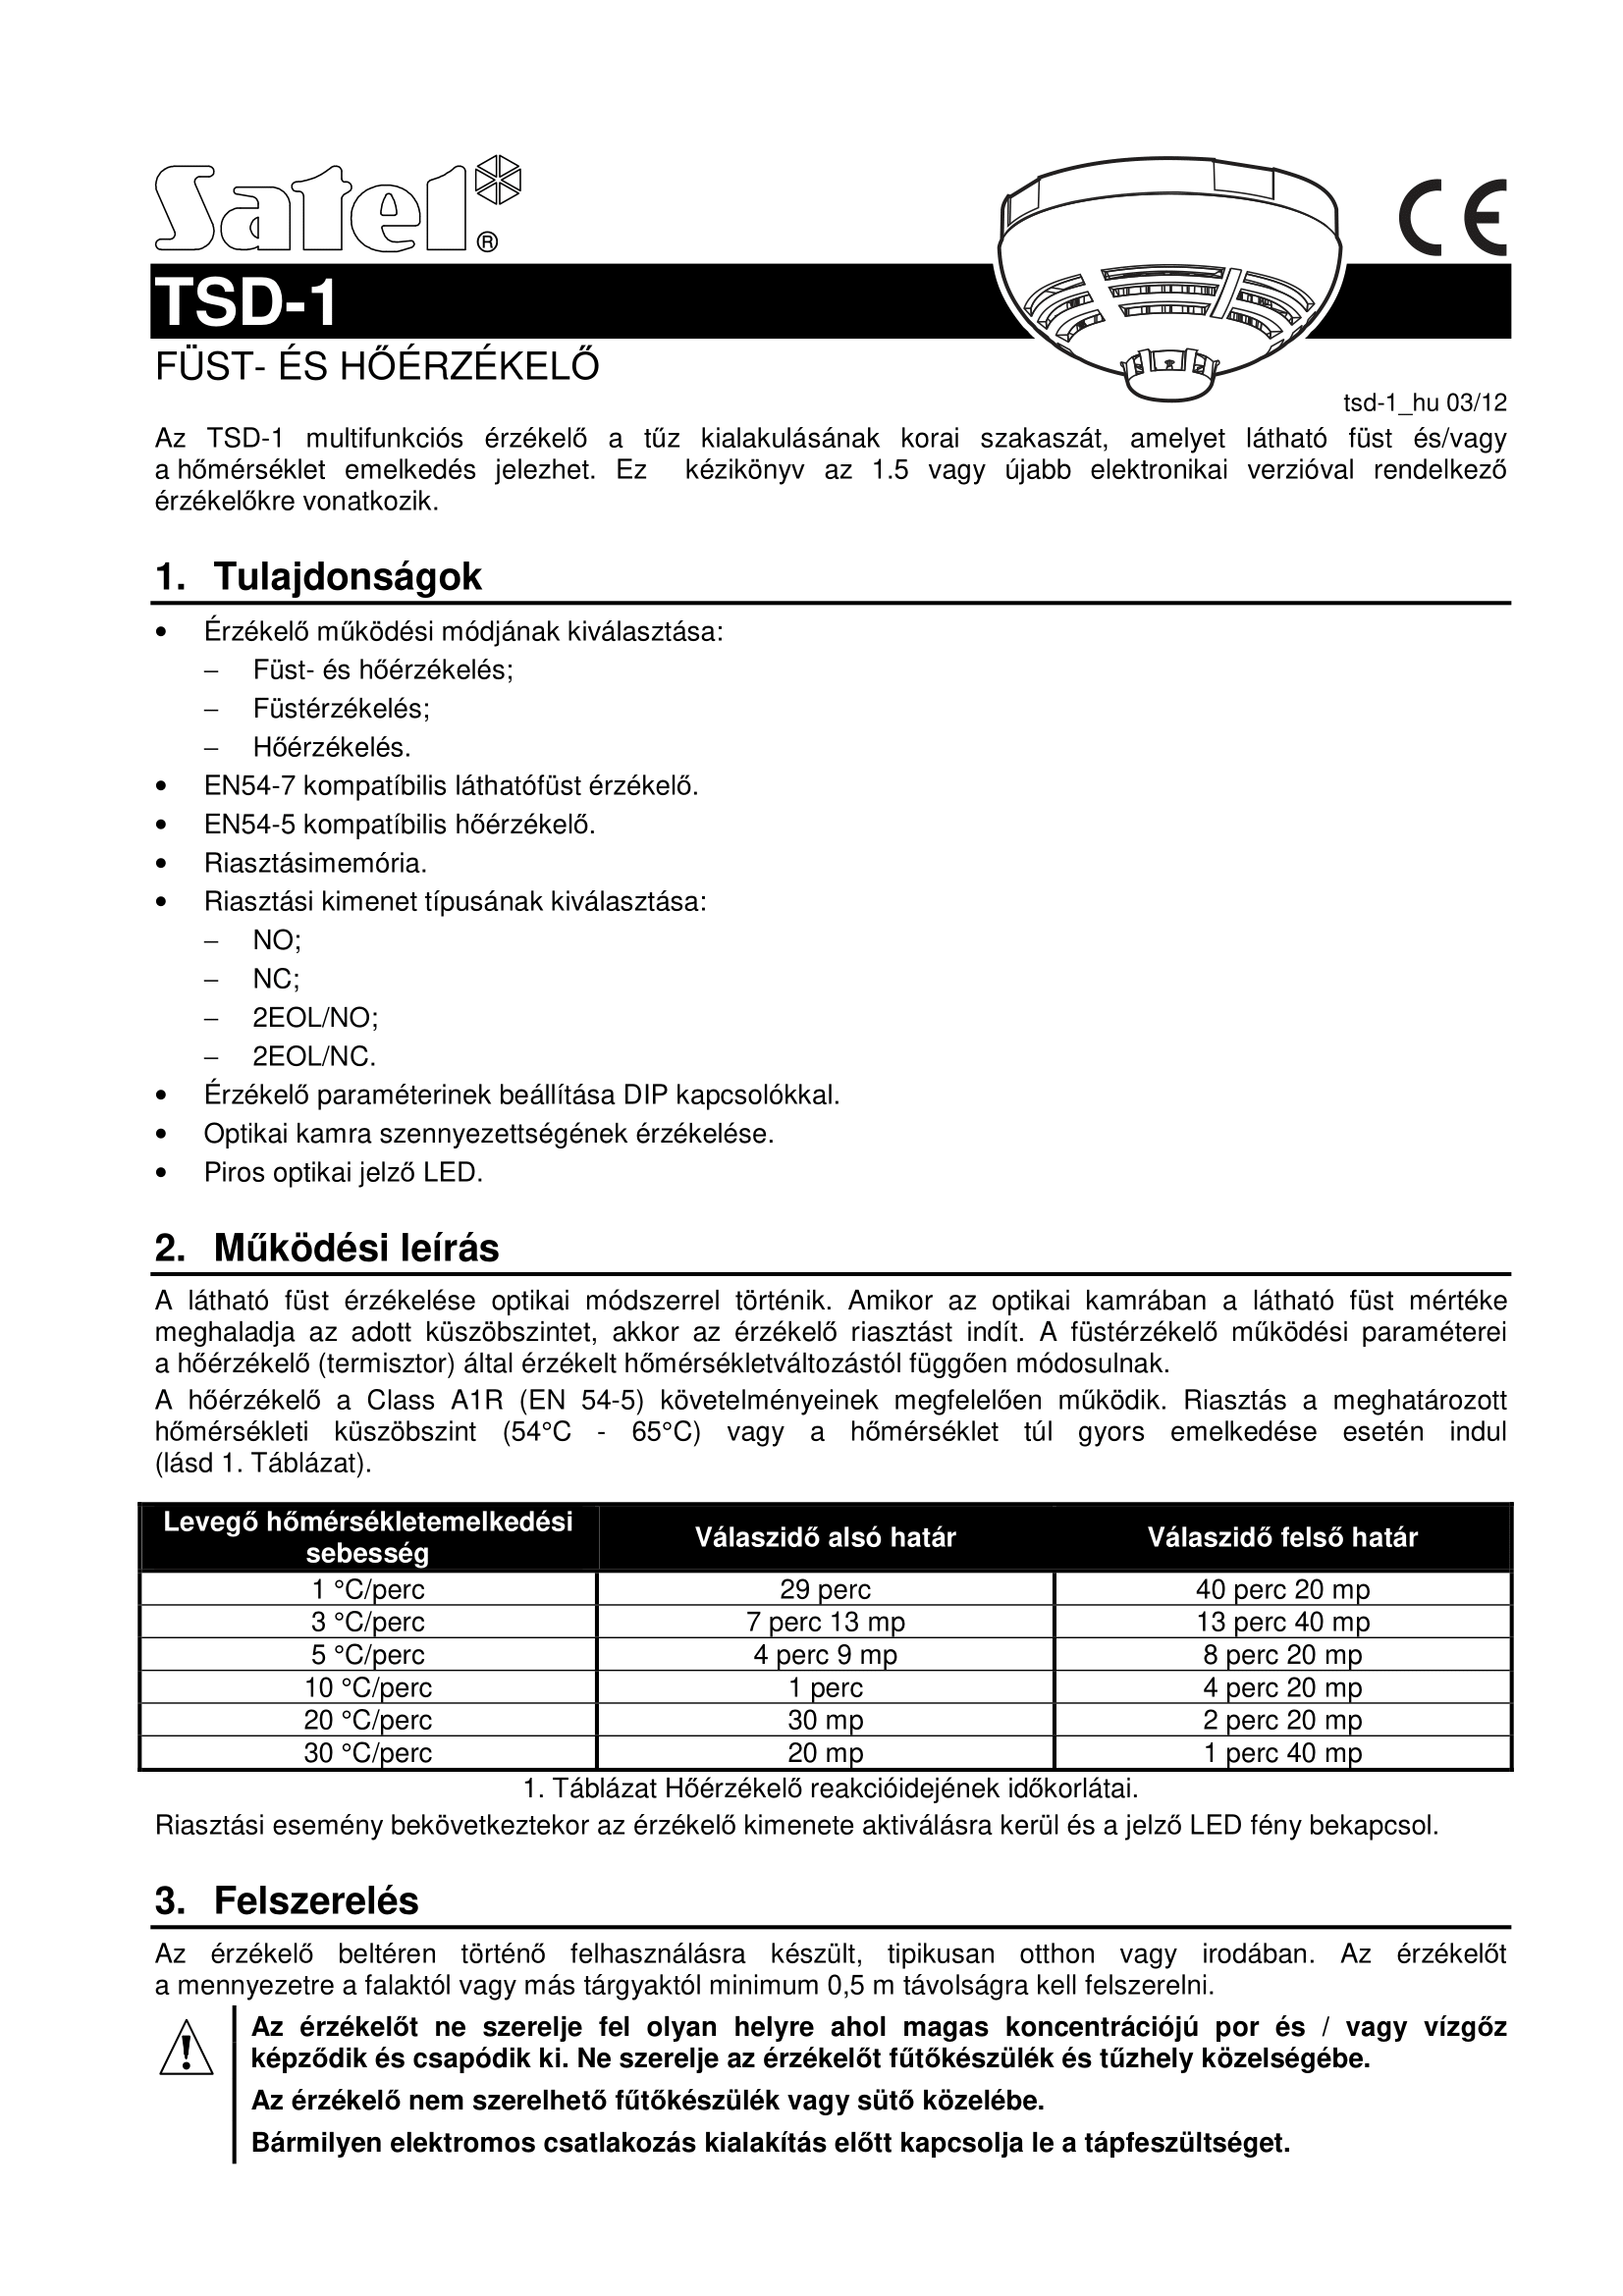 TSD-1 manual page1